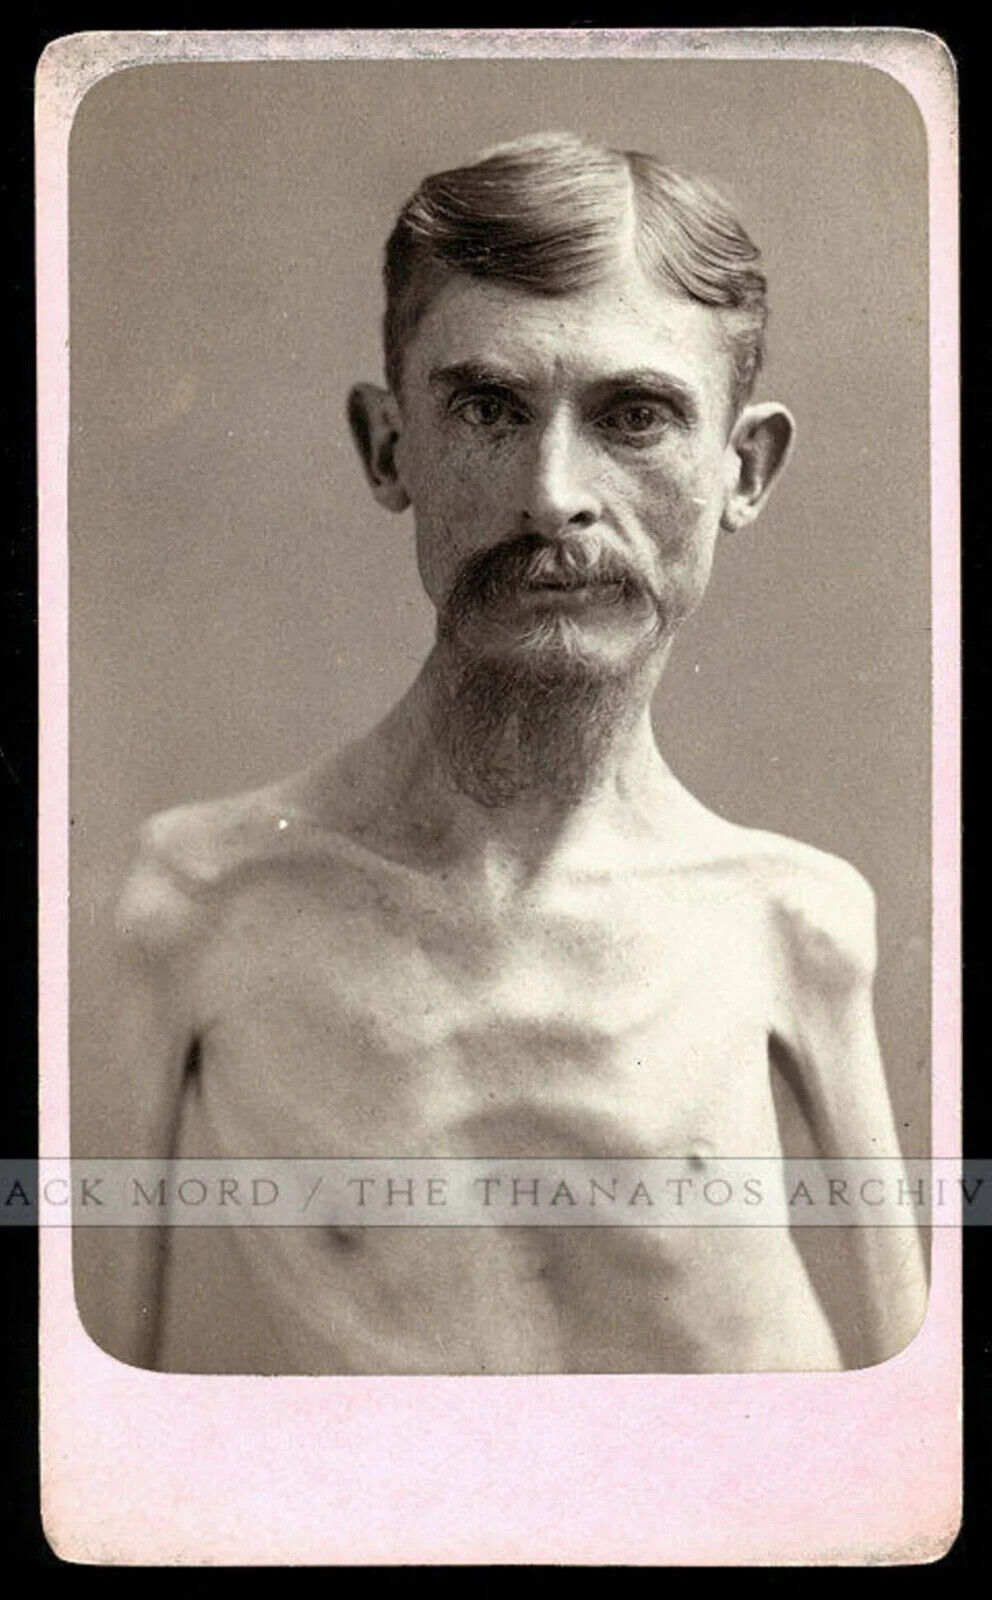 Extremely Rare Sideshow Freak Photo Skeleton Man Possibly OOAK Eisenmann Test